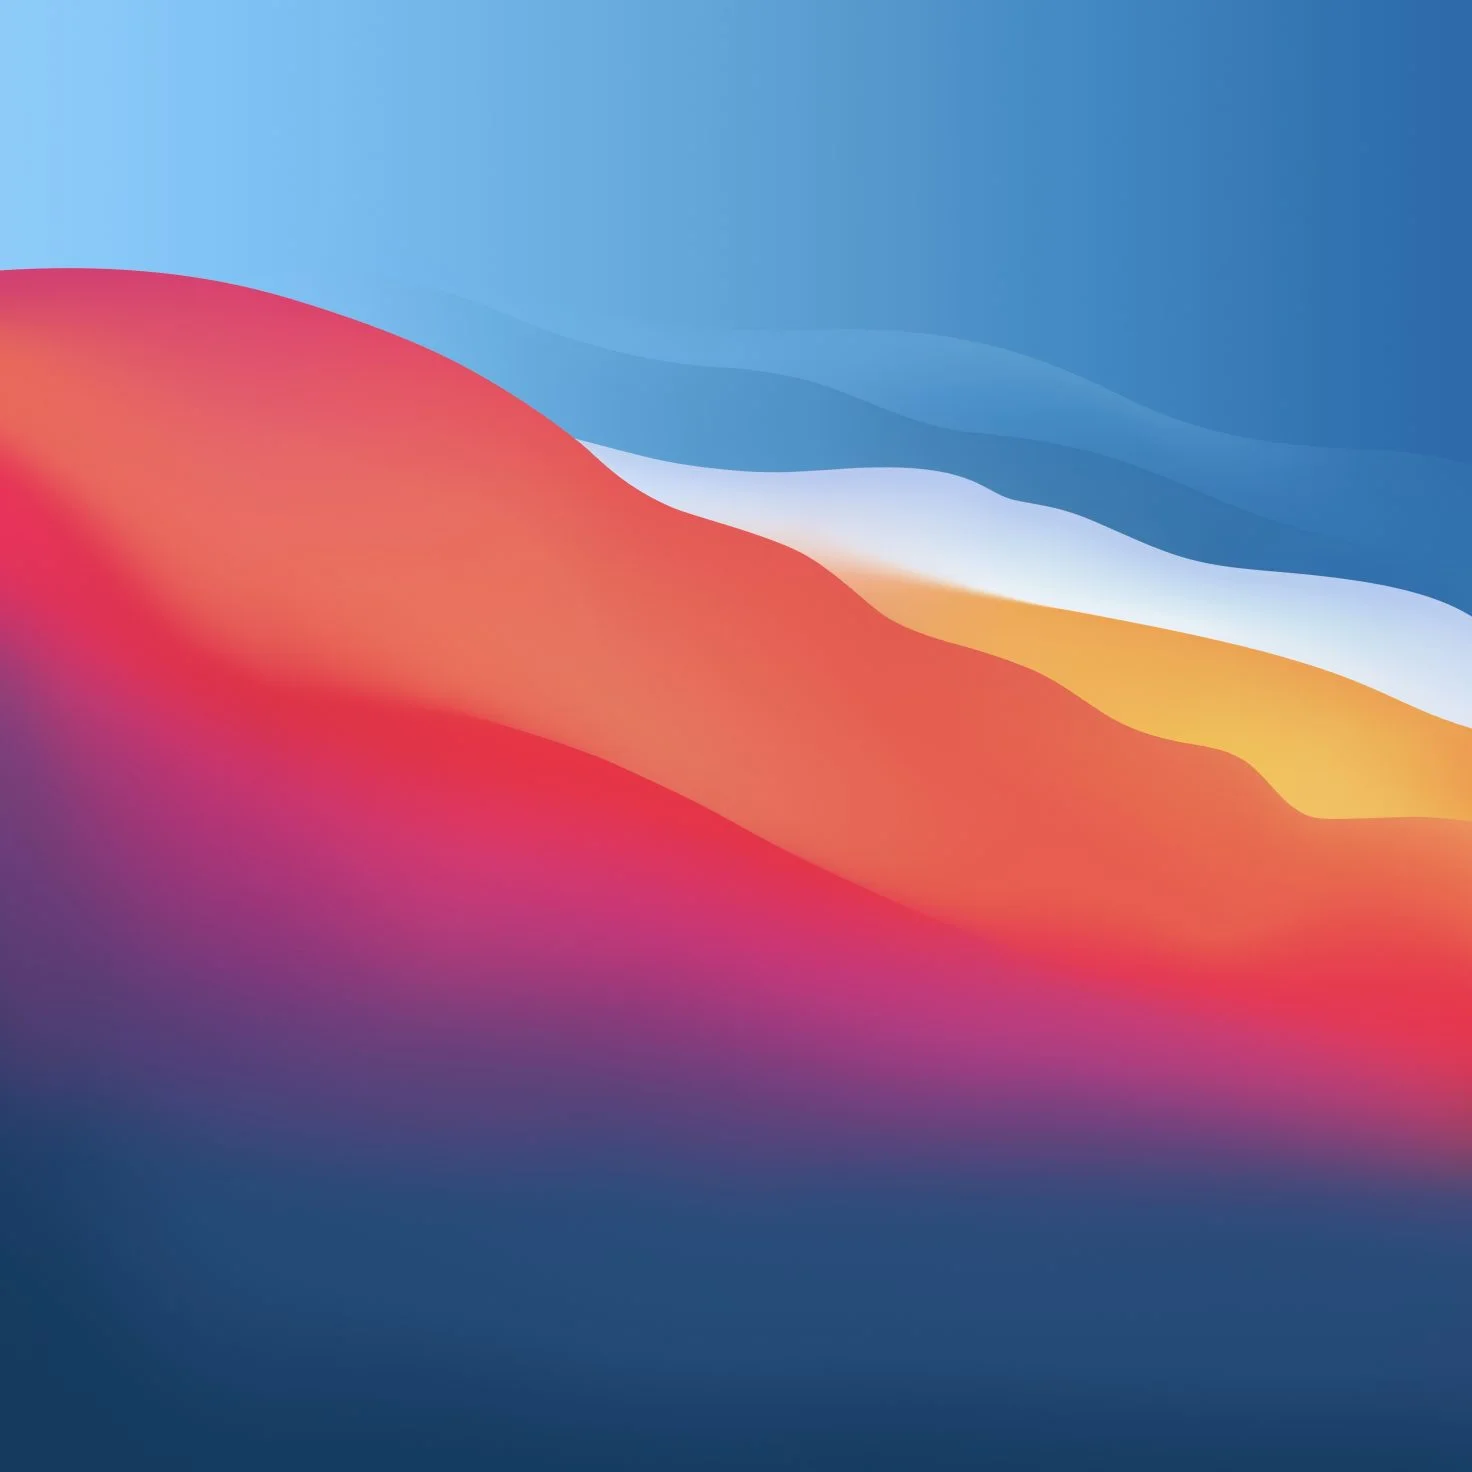 Mời tải về hình nền macOS Big Sur cho iPhone, iPad và máy tính 6